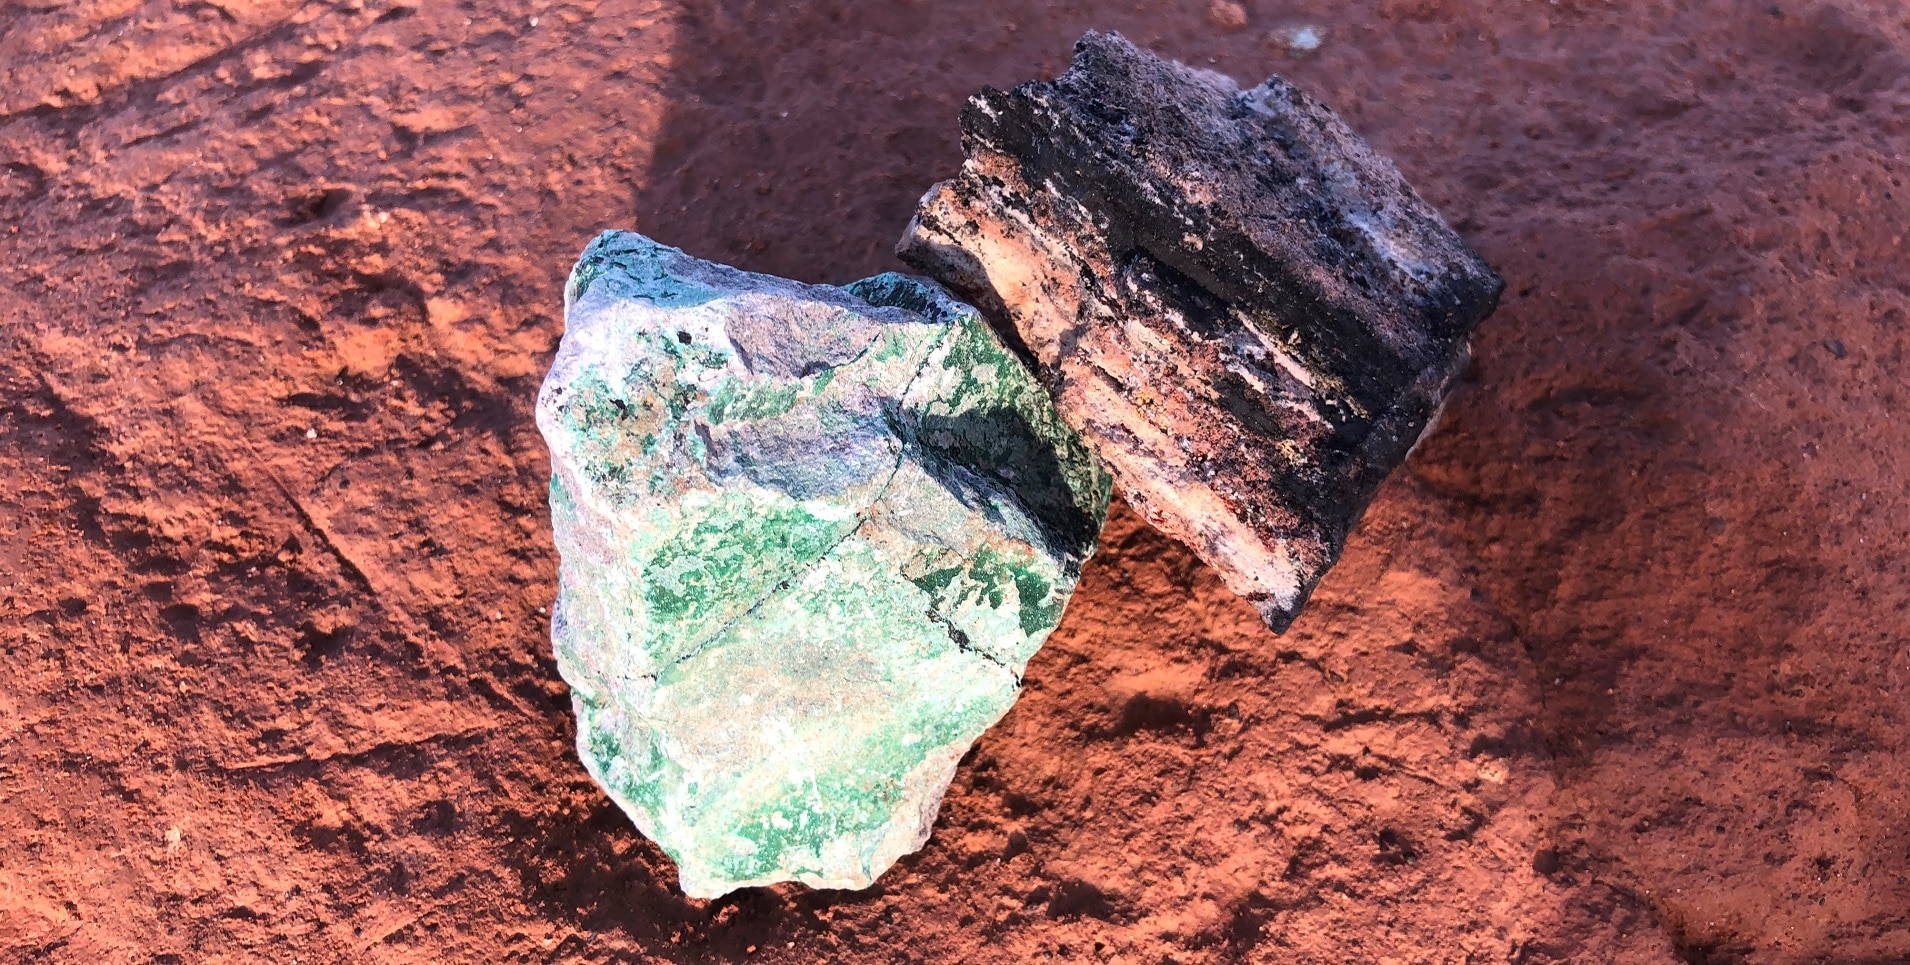  Ein Stück schwarzes Kobalt und ein Stück grünes Kupfer liegen auf dem ockerfarbenen Boden, um den Abbau im Kupfergürtel der Demokratischen Republik Kongo zu veranschaulichen.